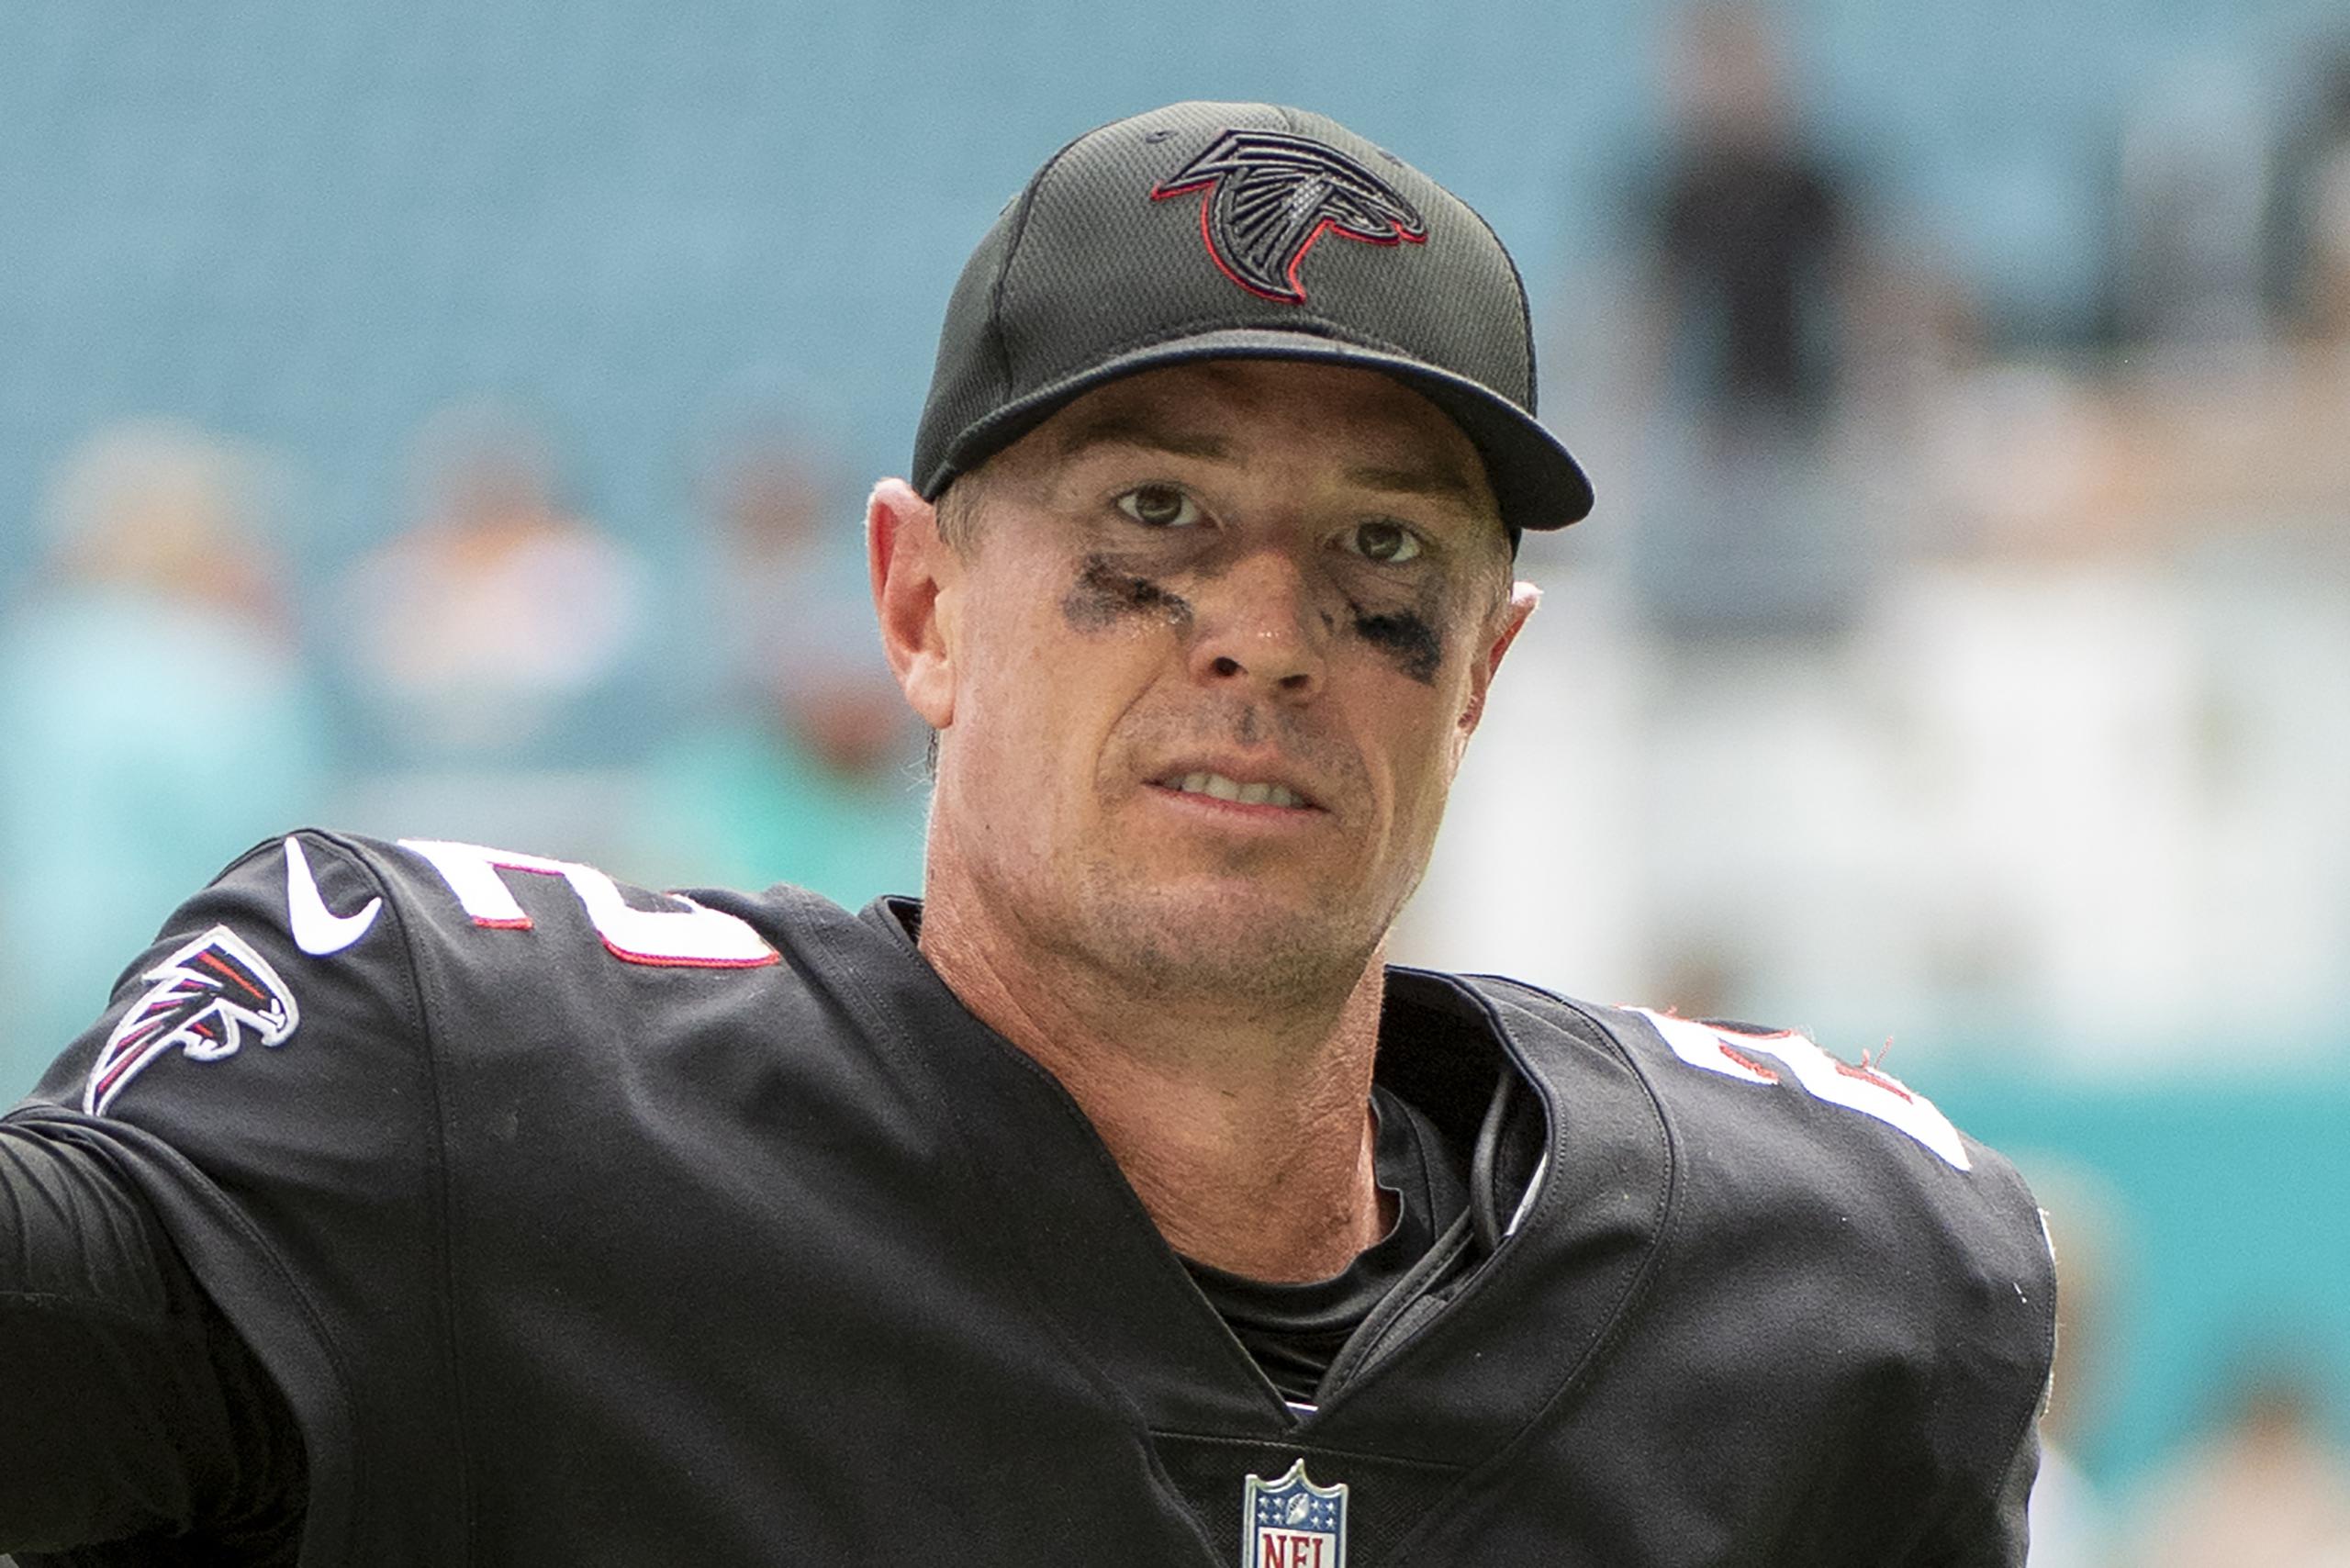 El quarterback de los Falcons de Atlanta Matt Ryan abandona el campo durante el encuentro ante los Dolphins de Miami. El lunes 21 de marzo del 2022, Ryan, que cumple 37 años en mayo, es enviado a los Colts de Indianápolis a cambio de selecciones de draft.